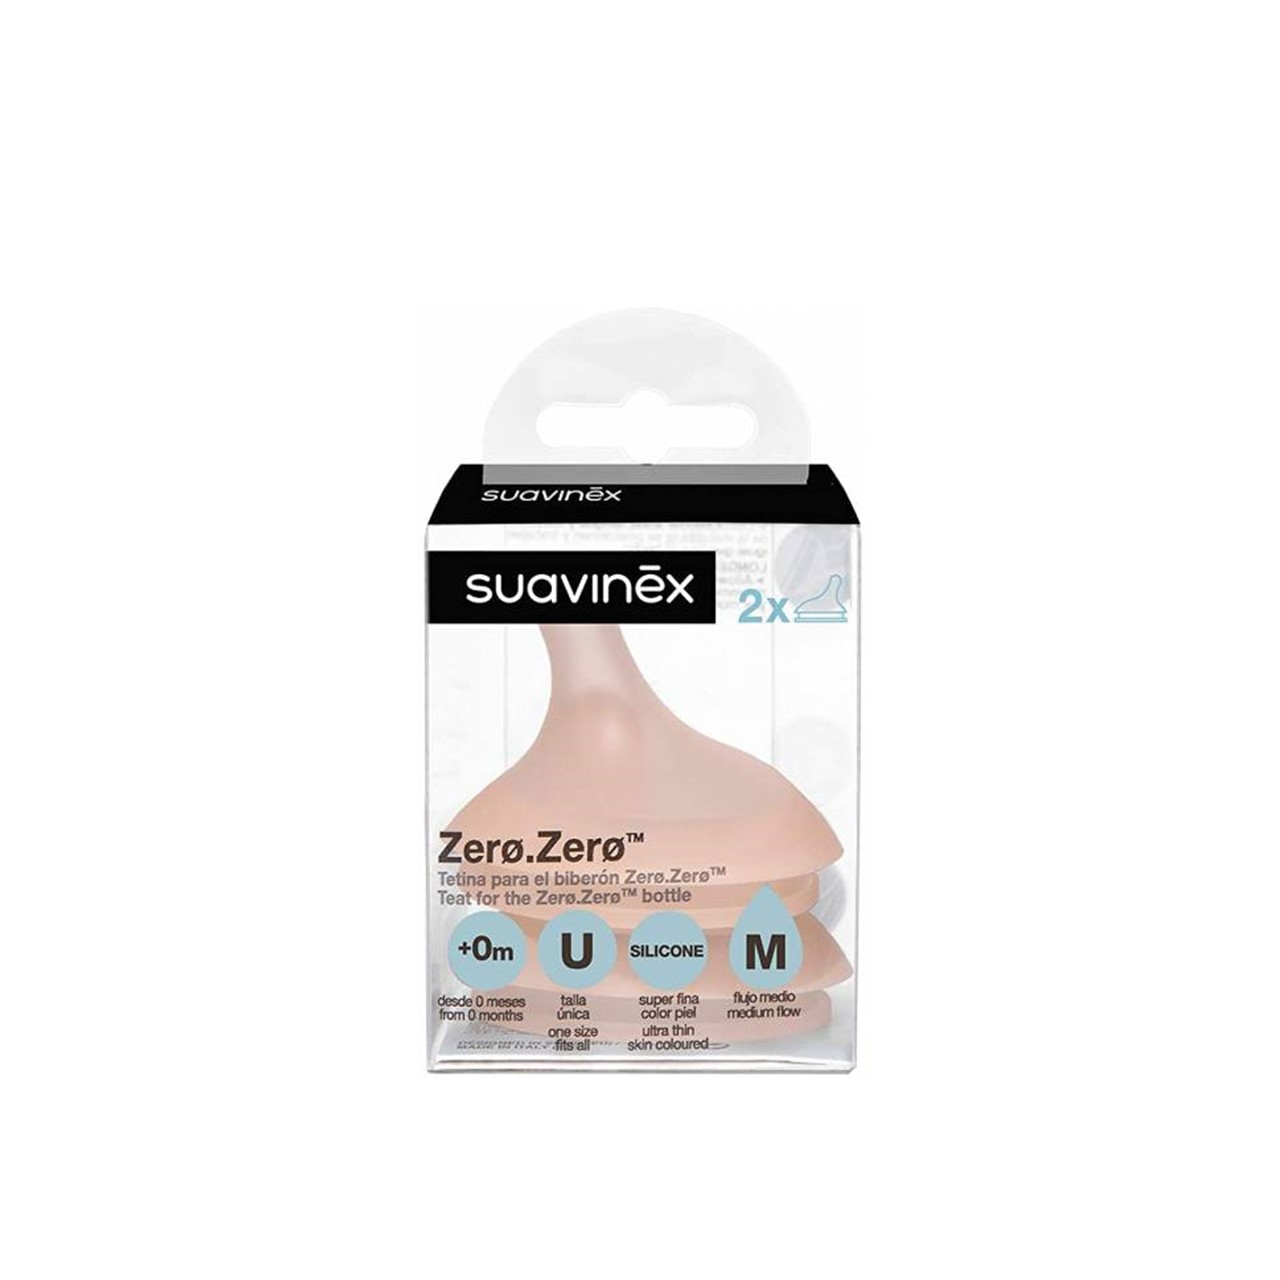 Suavinex Zero Zero Anti-Colic Bottle Flow A +0m 180ml (6.09fl oz)